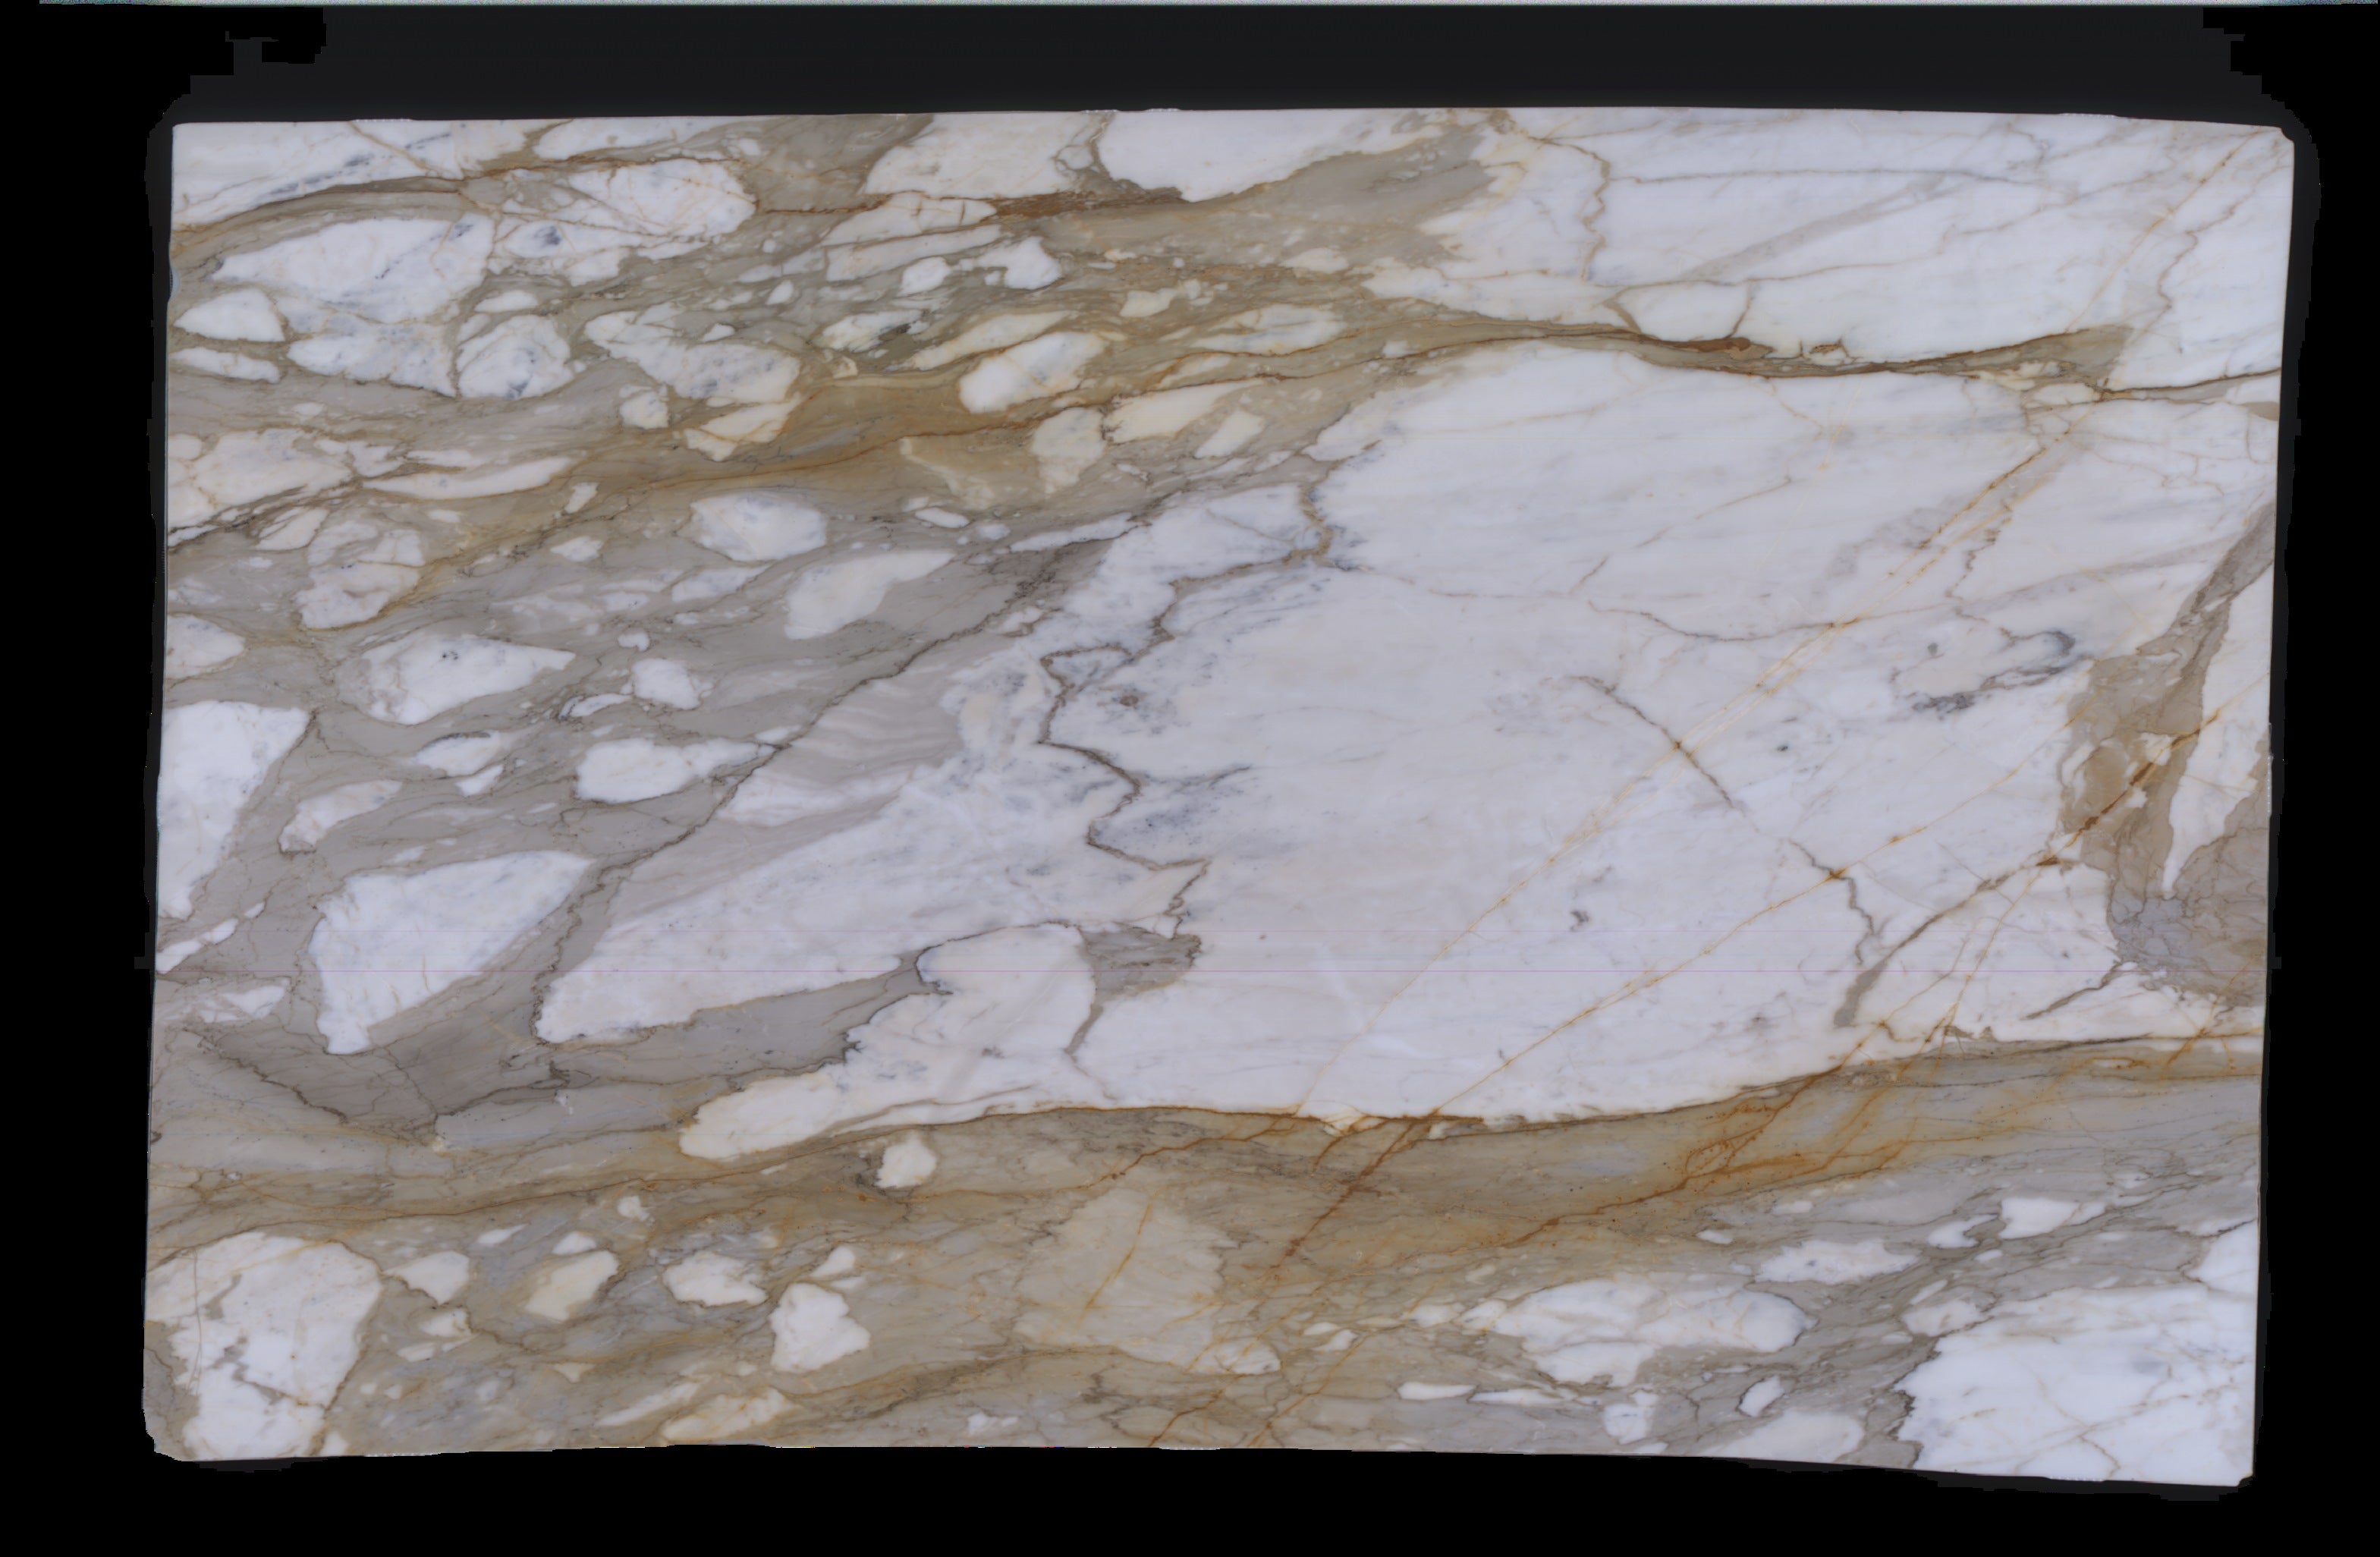  Calacatta Macchia Vecchia Marble Slab 3/4 - 953#56 -  VS 51x112 